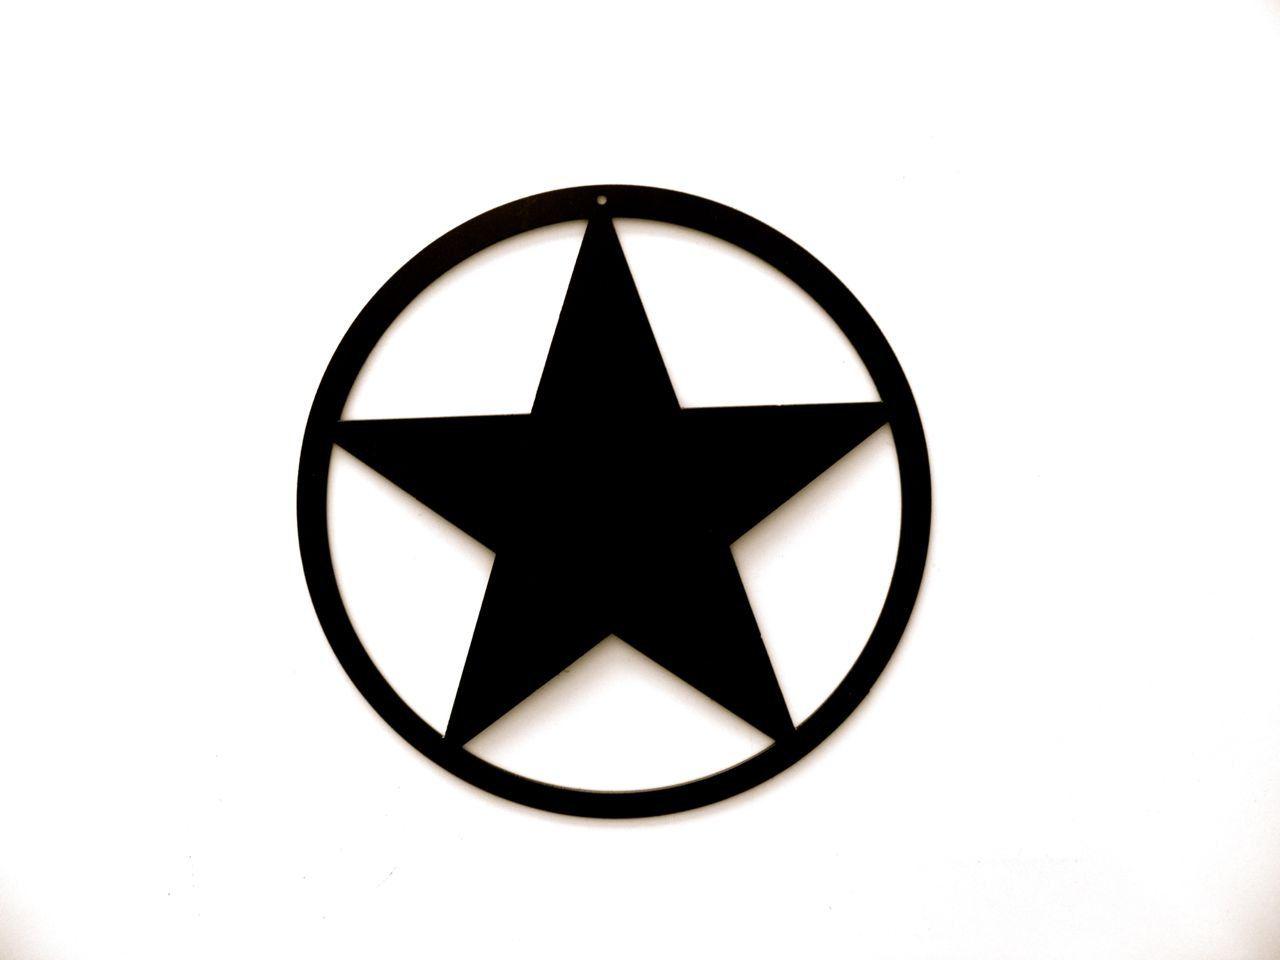 Circle around a Star Logo - Black star in circle Logos